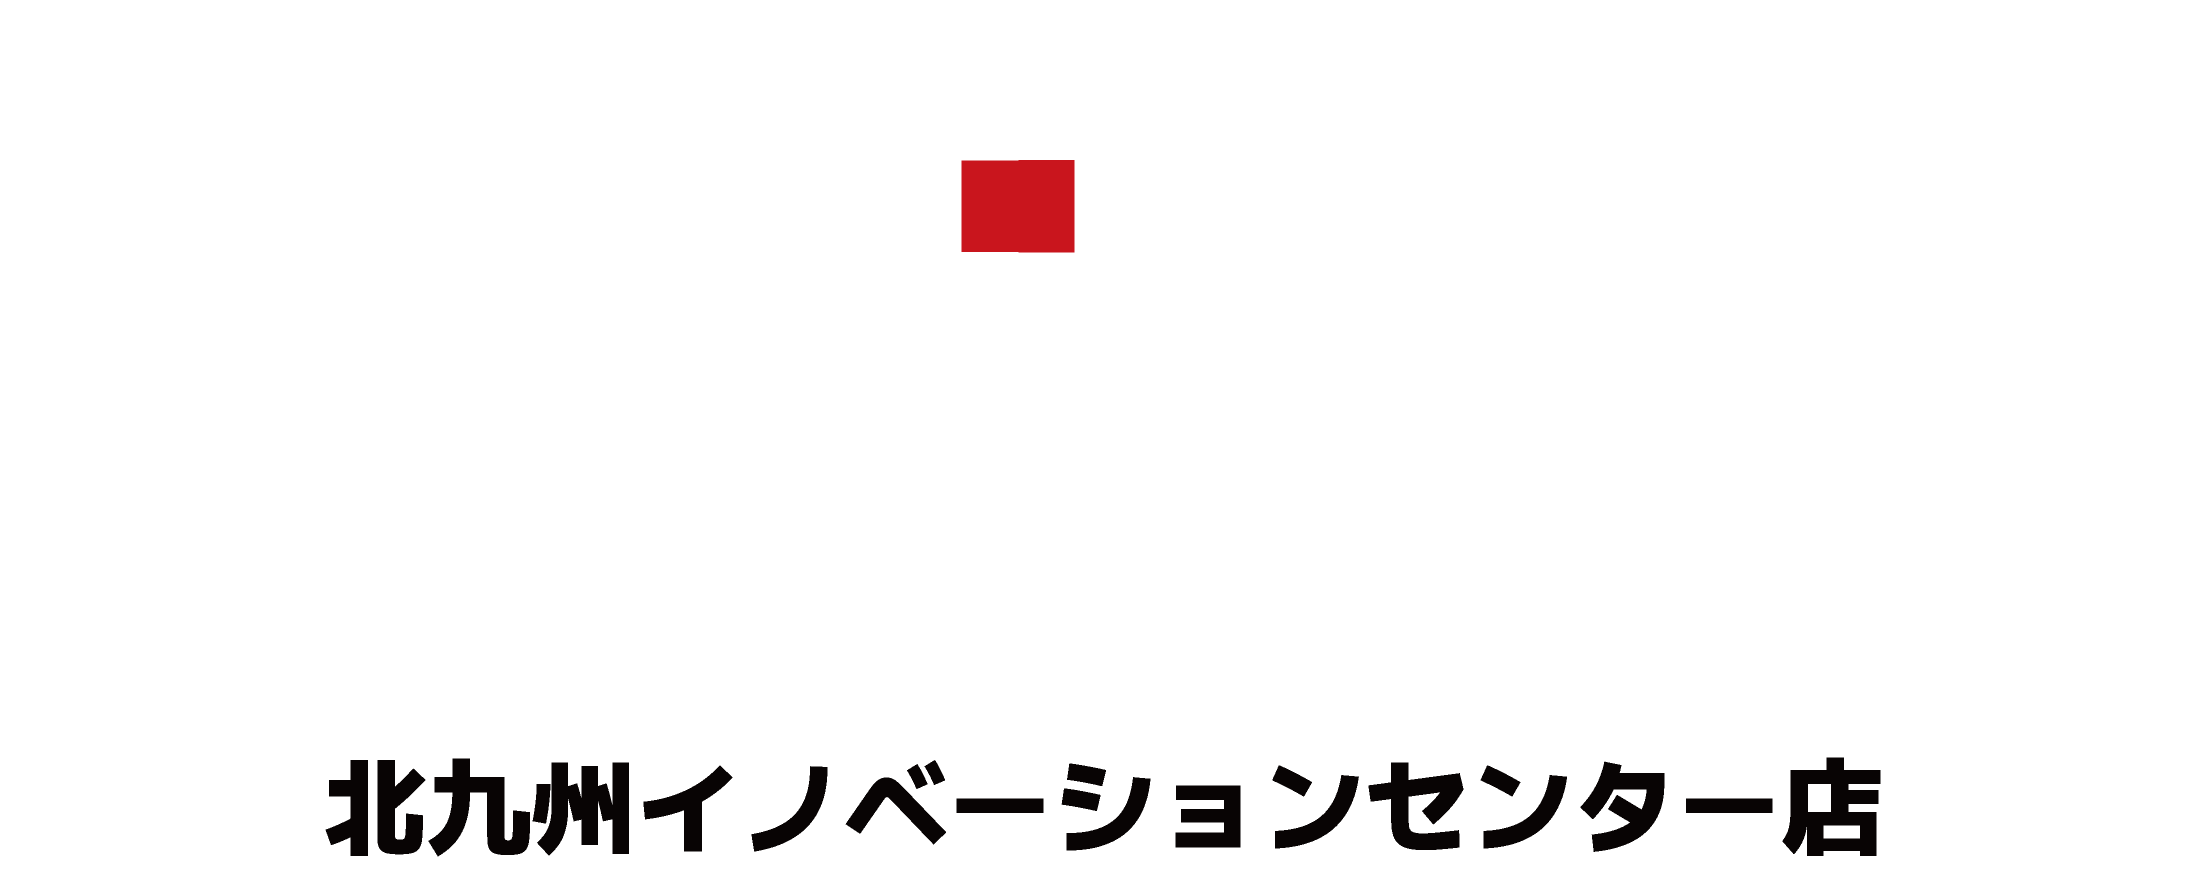 教育セミナーデジタル複合施設「REDEE 北九州イノベーションセンター店」